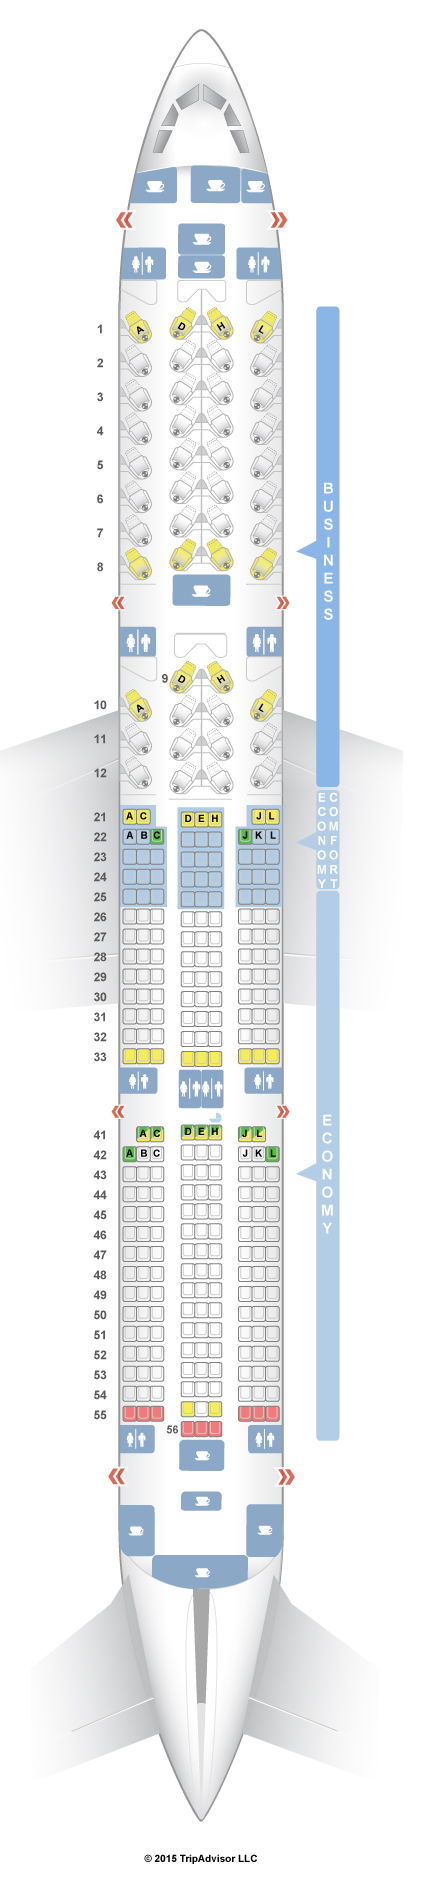 SeatGuru Seat Map Finnair Airbus A350-900 V1 (350)